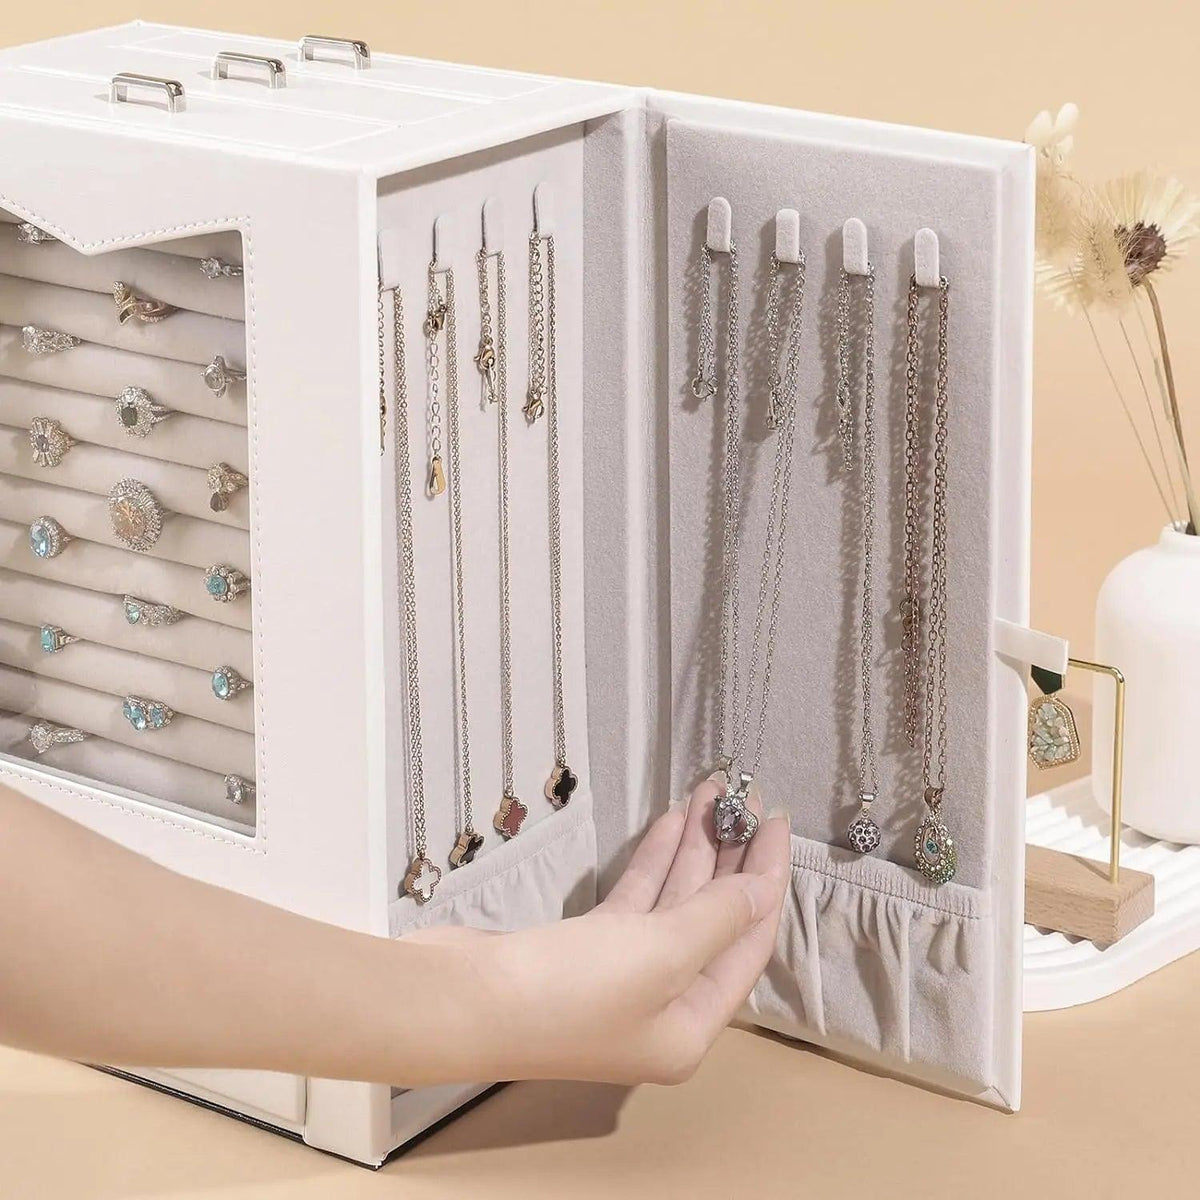 Jewelry Organizer Box